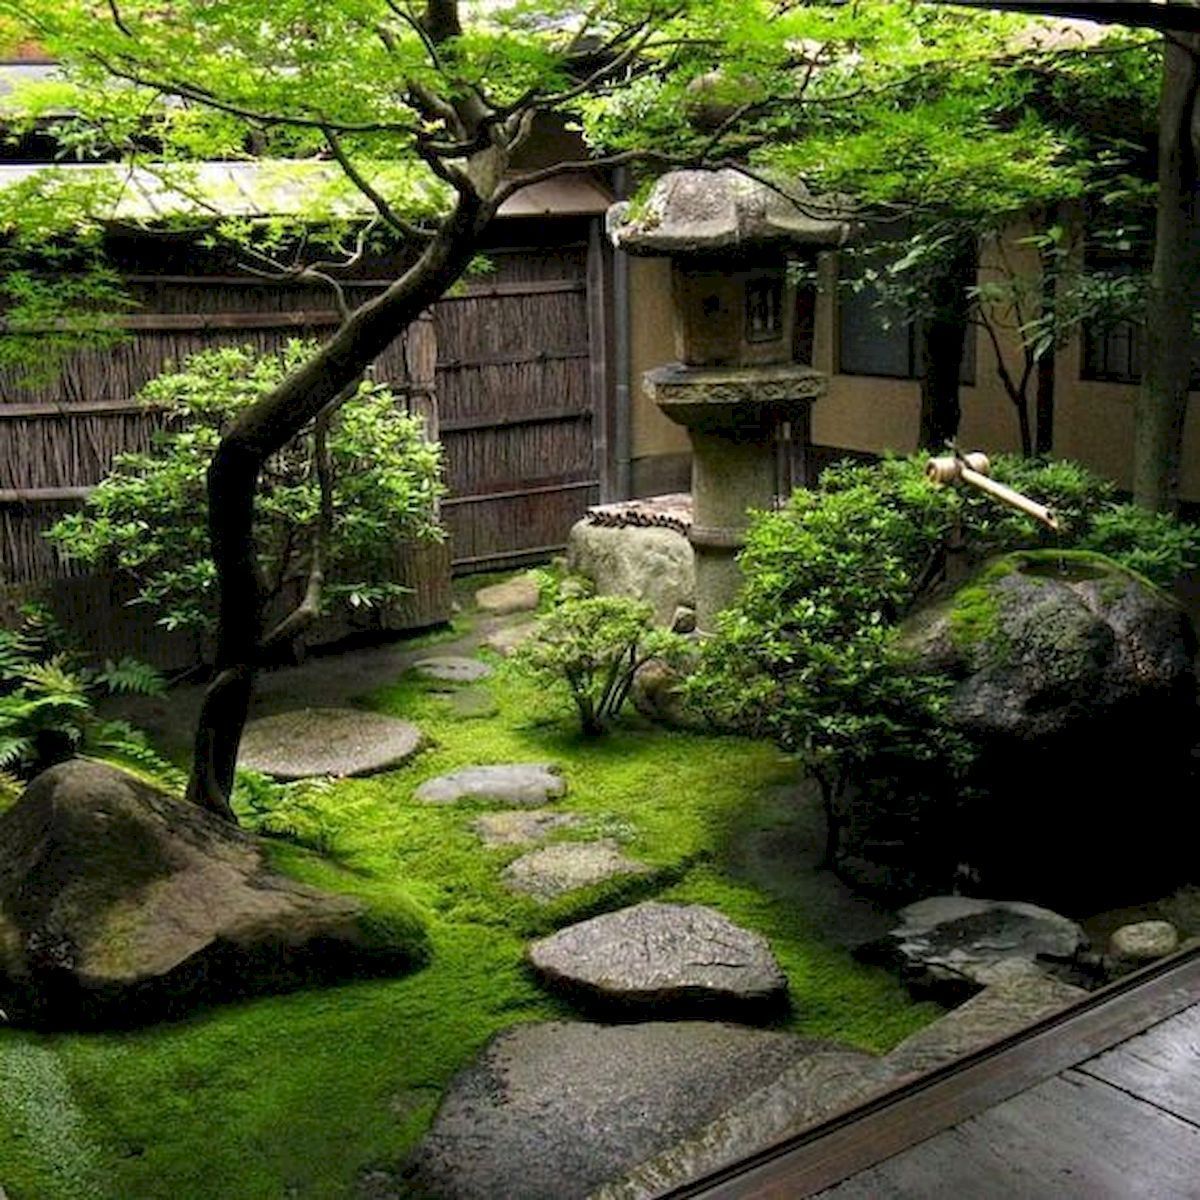 Awe-inspiring Backyard Japanese Garden Design Ideas -   16 garden design backyard ideas